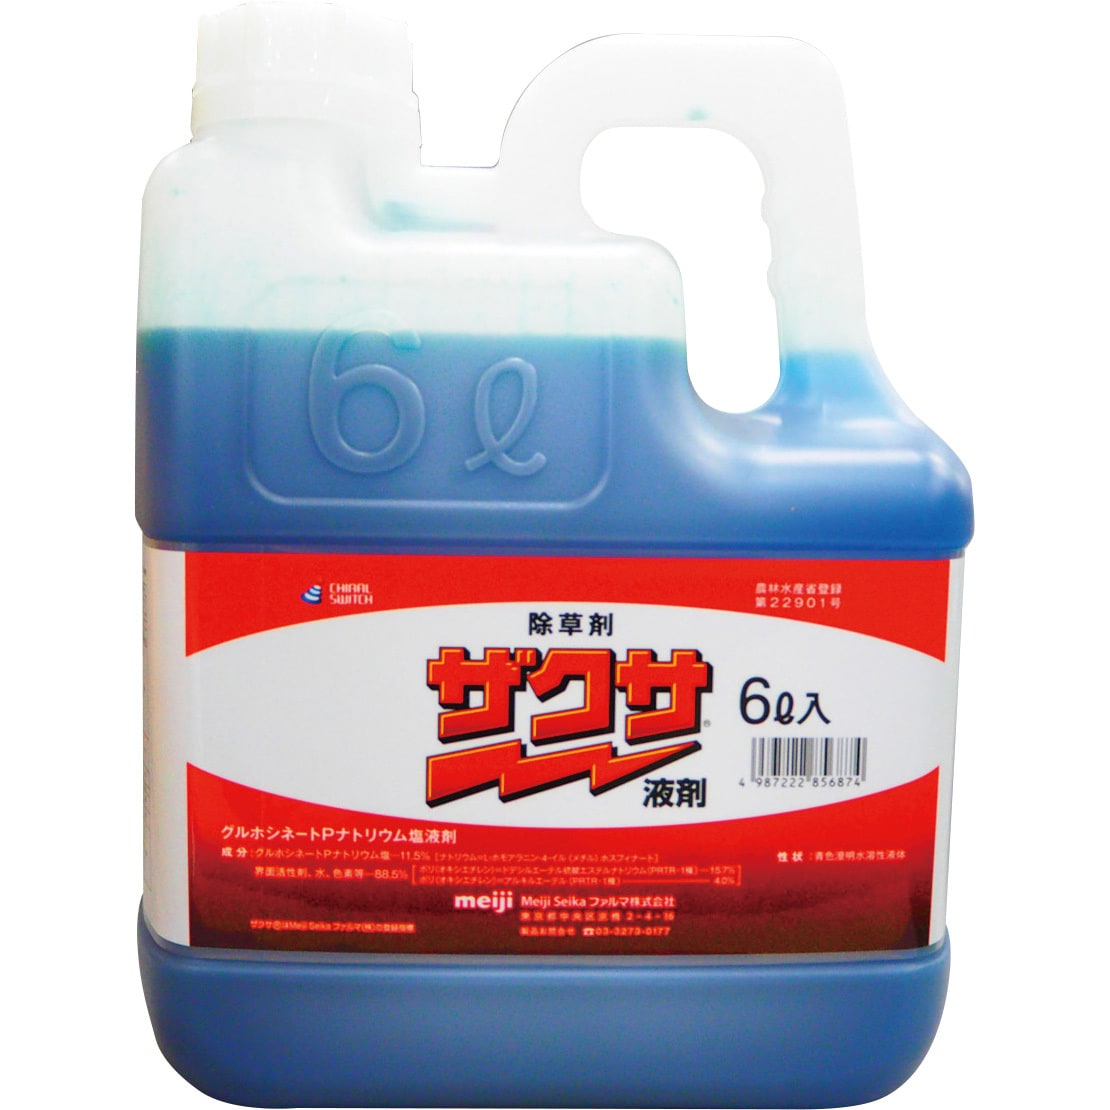 ザクサ液剤 1本(6L) 三井化学クロップ&ライフソリューション株式会社